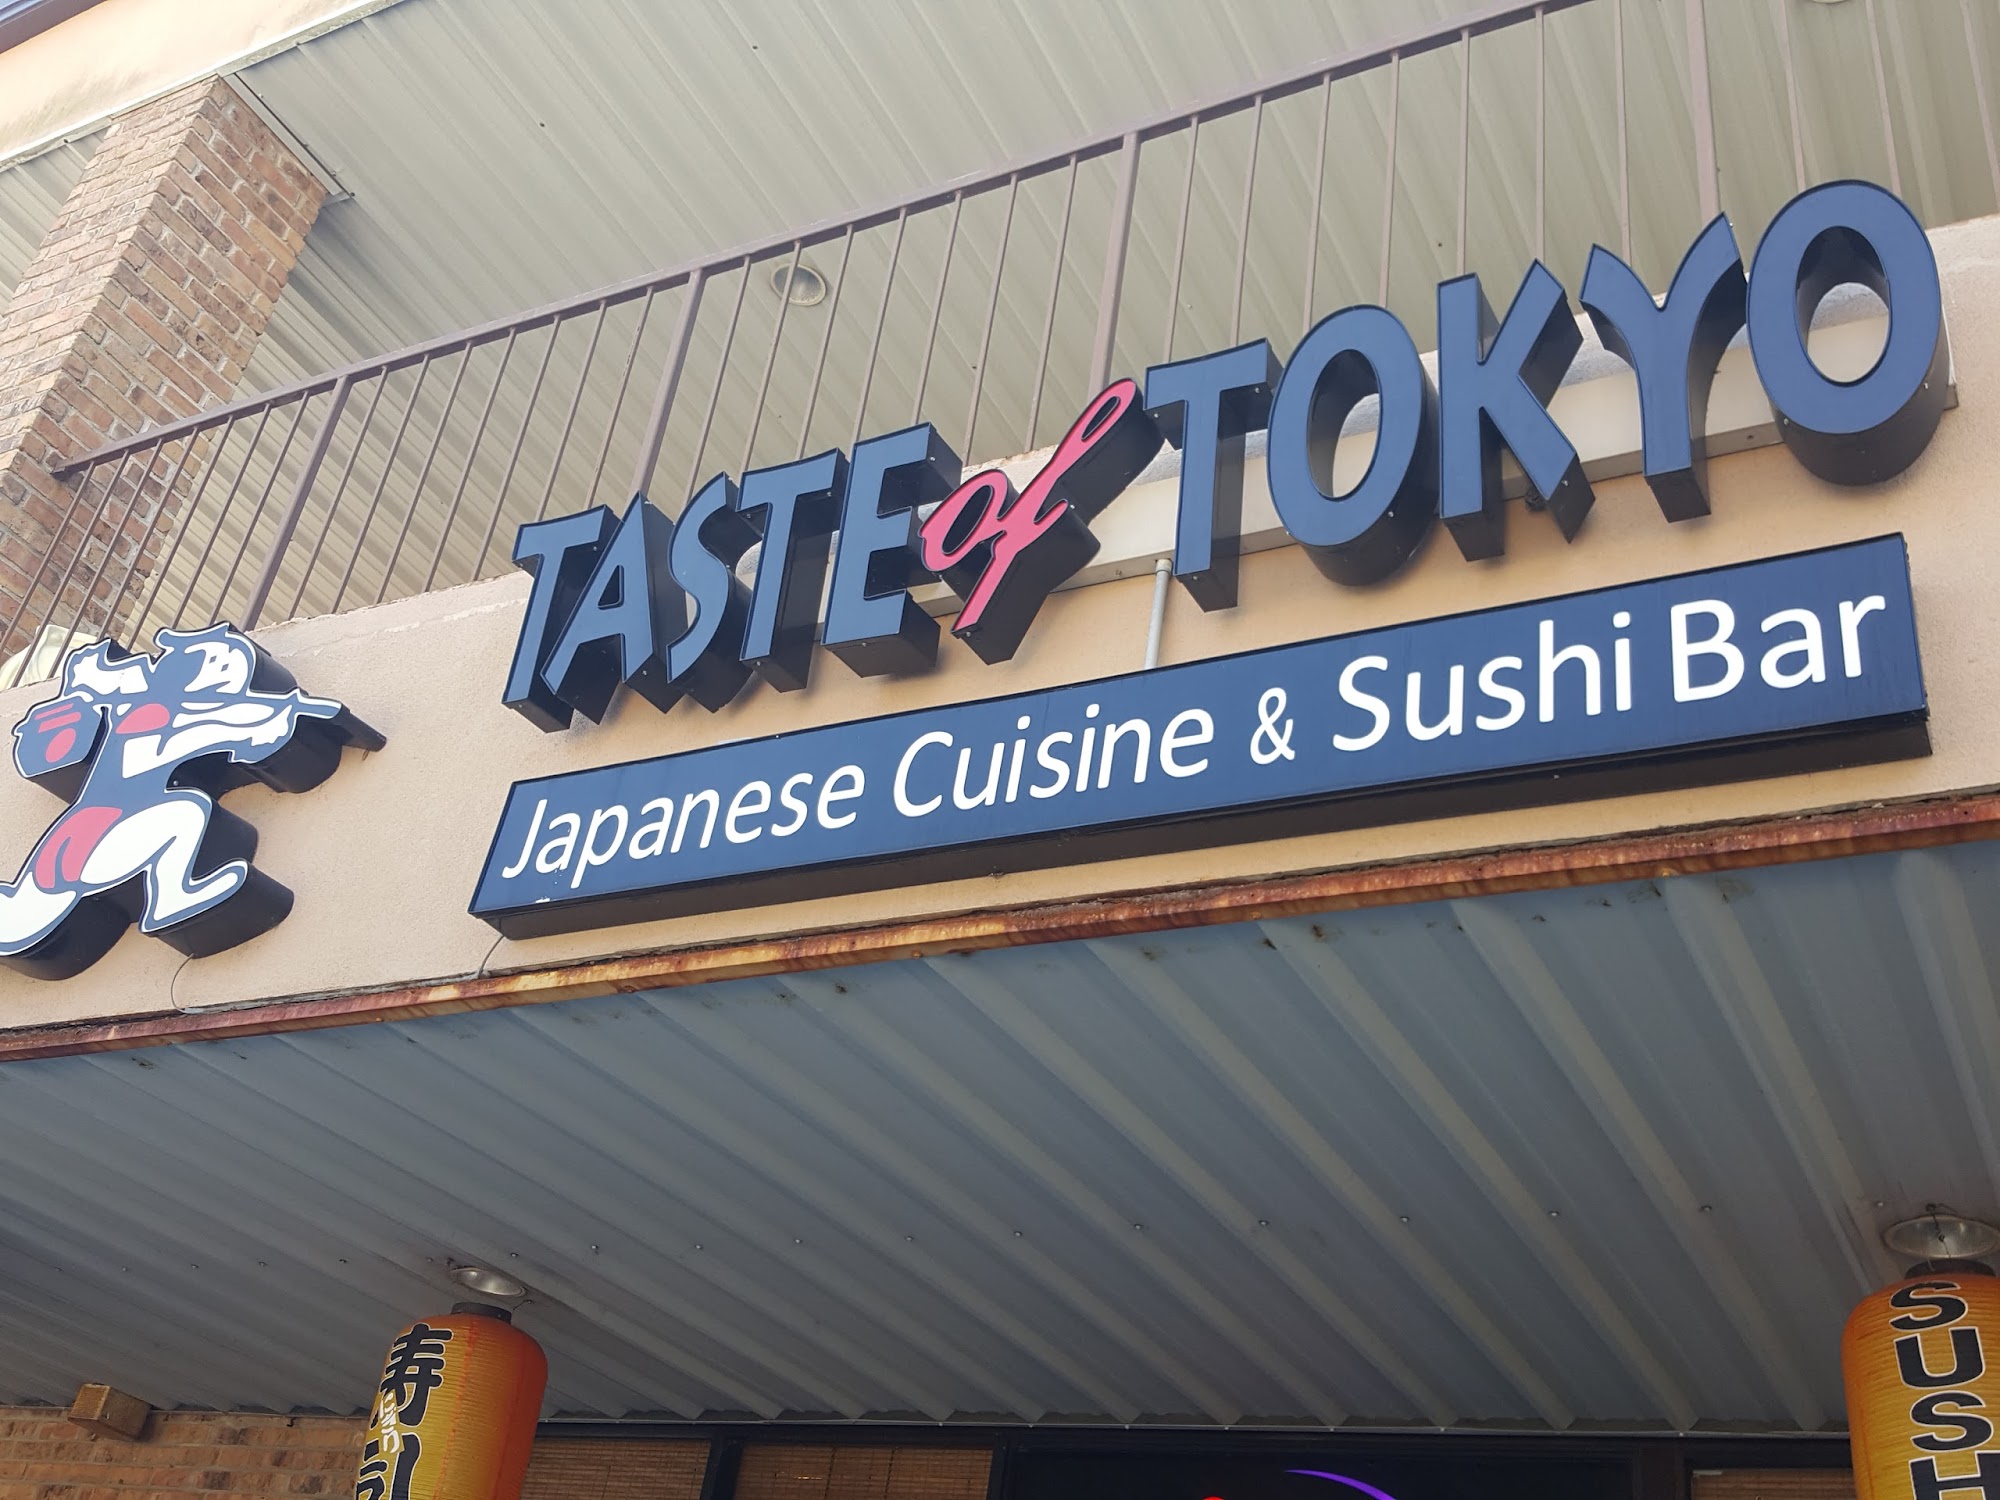 Taste of Tokyo